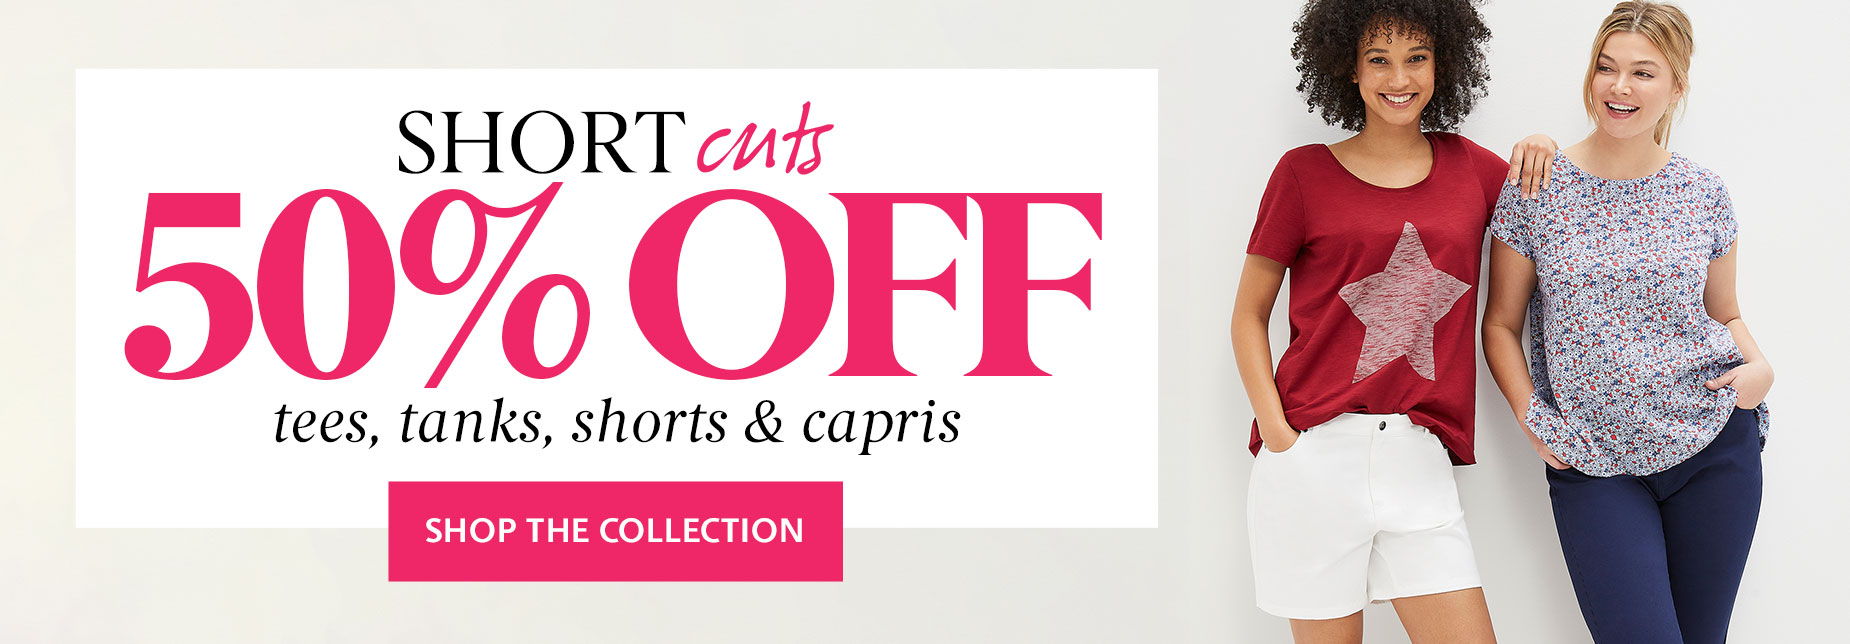 Short cuts - 50%Off Tees, tanks, shorts & capris 